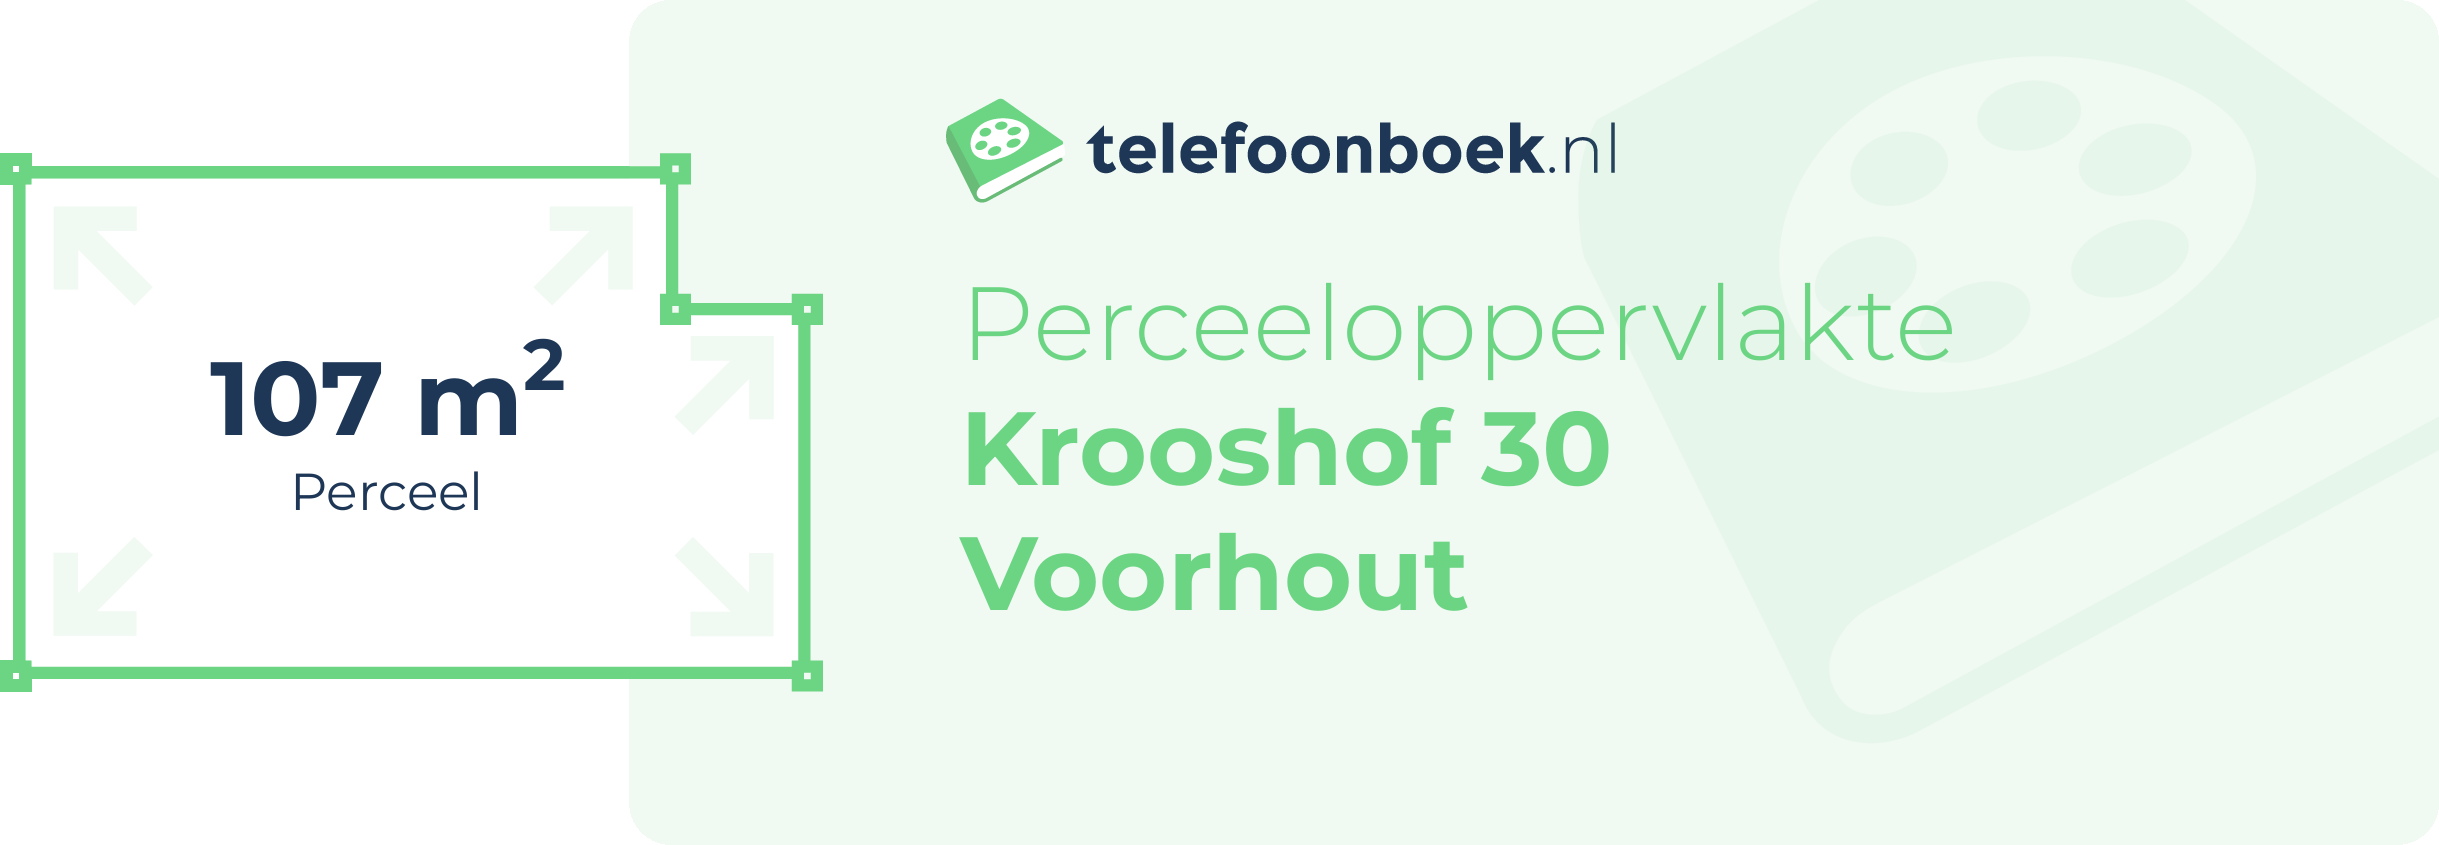 Perceeloppervlakte Krooshof 30 Voorhout